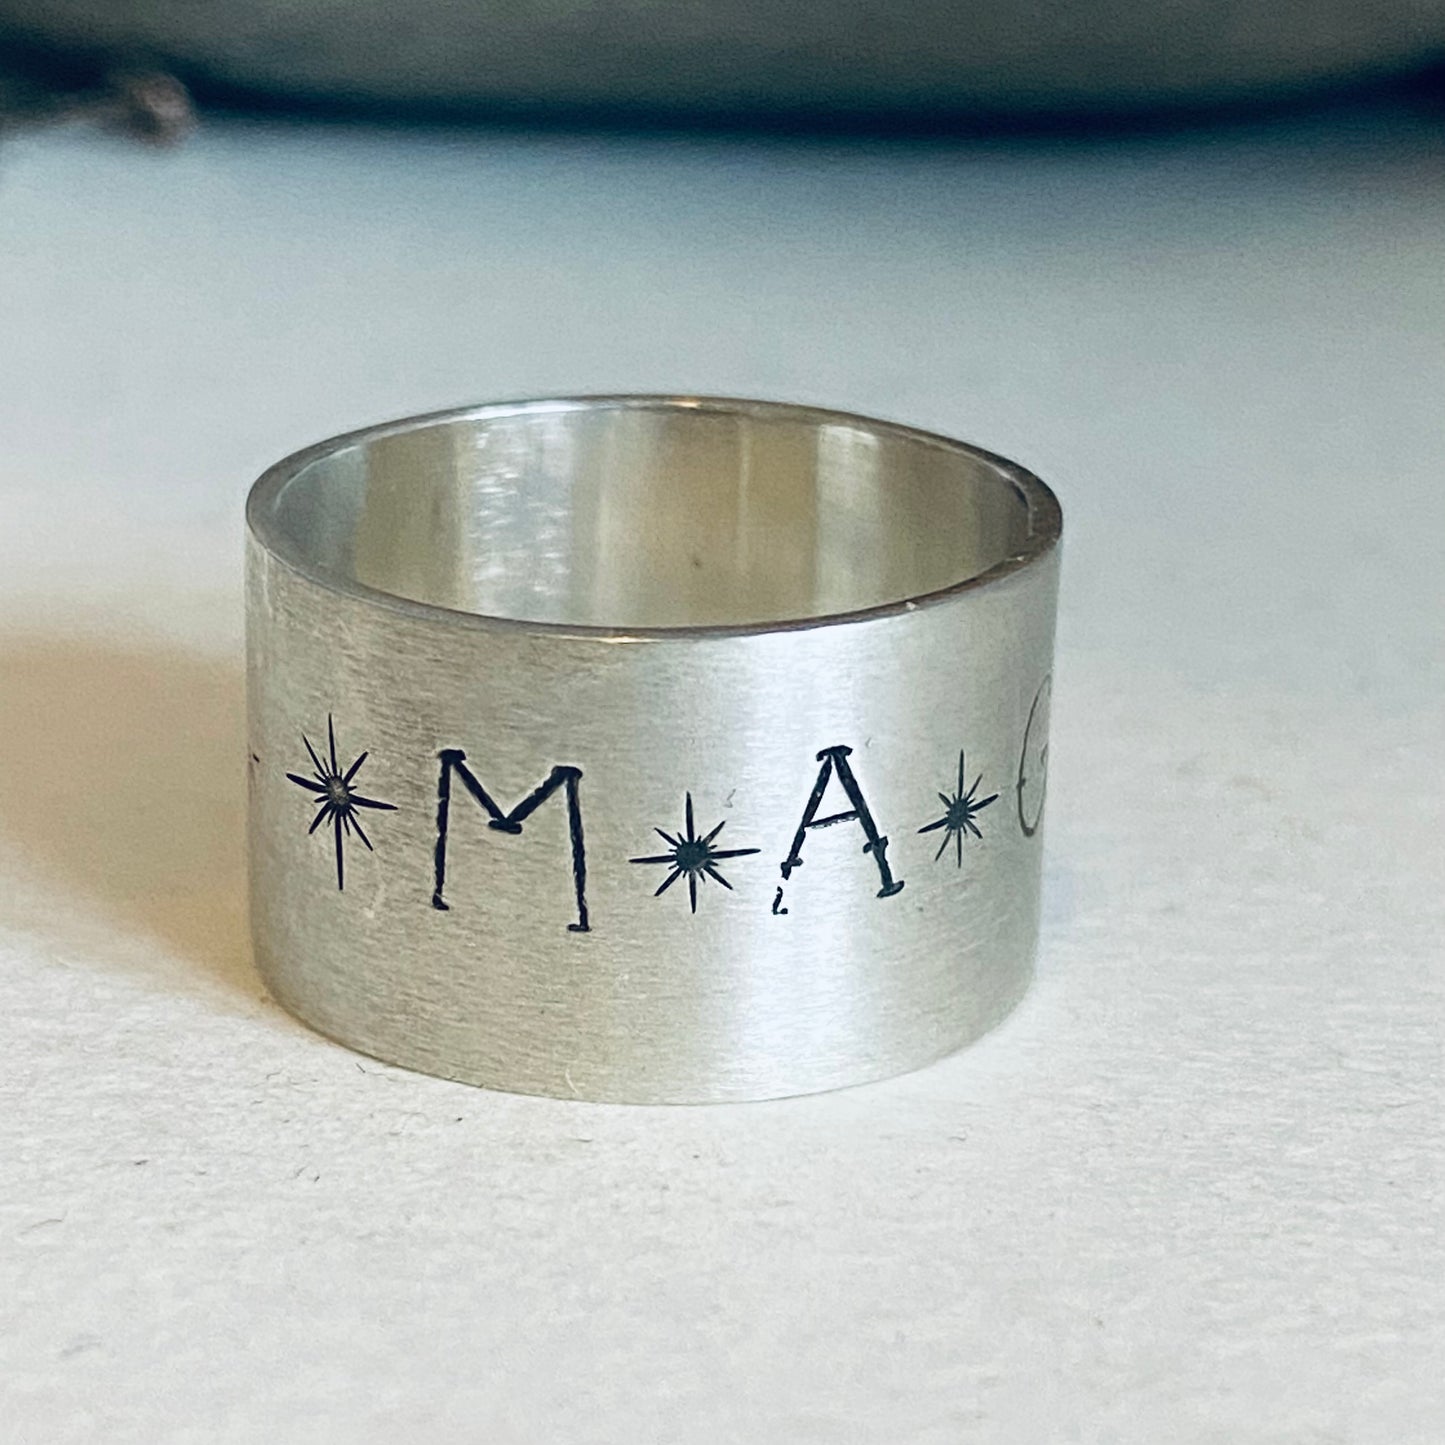 Magickal Band Ring